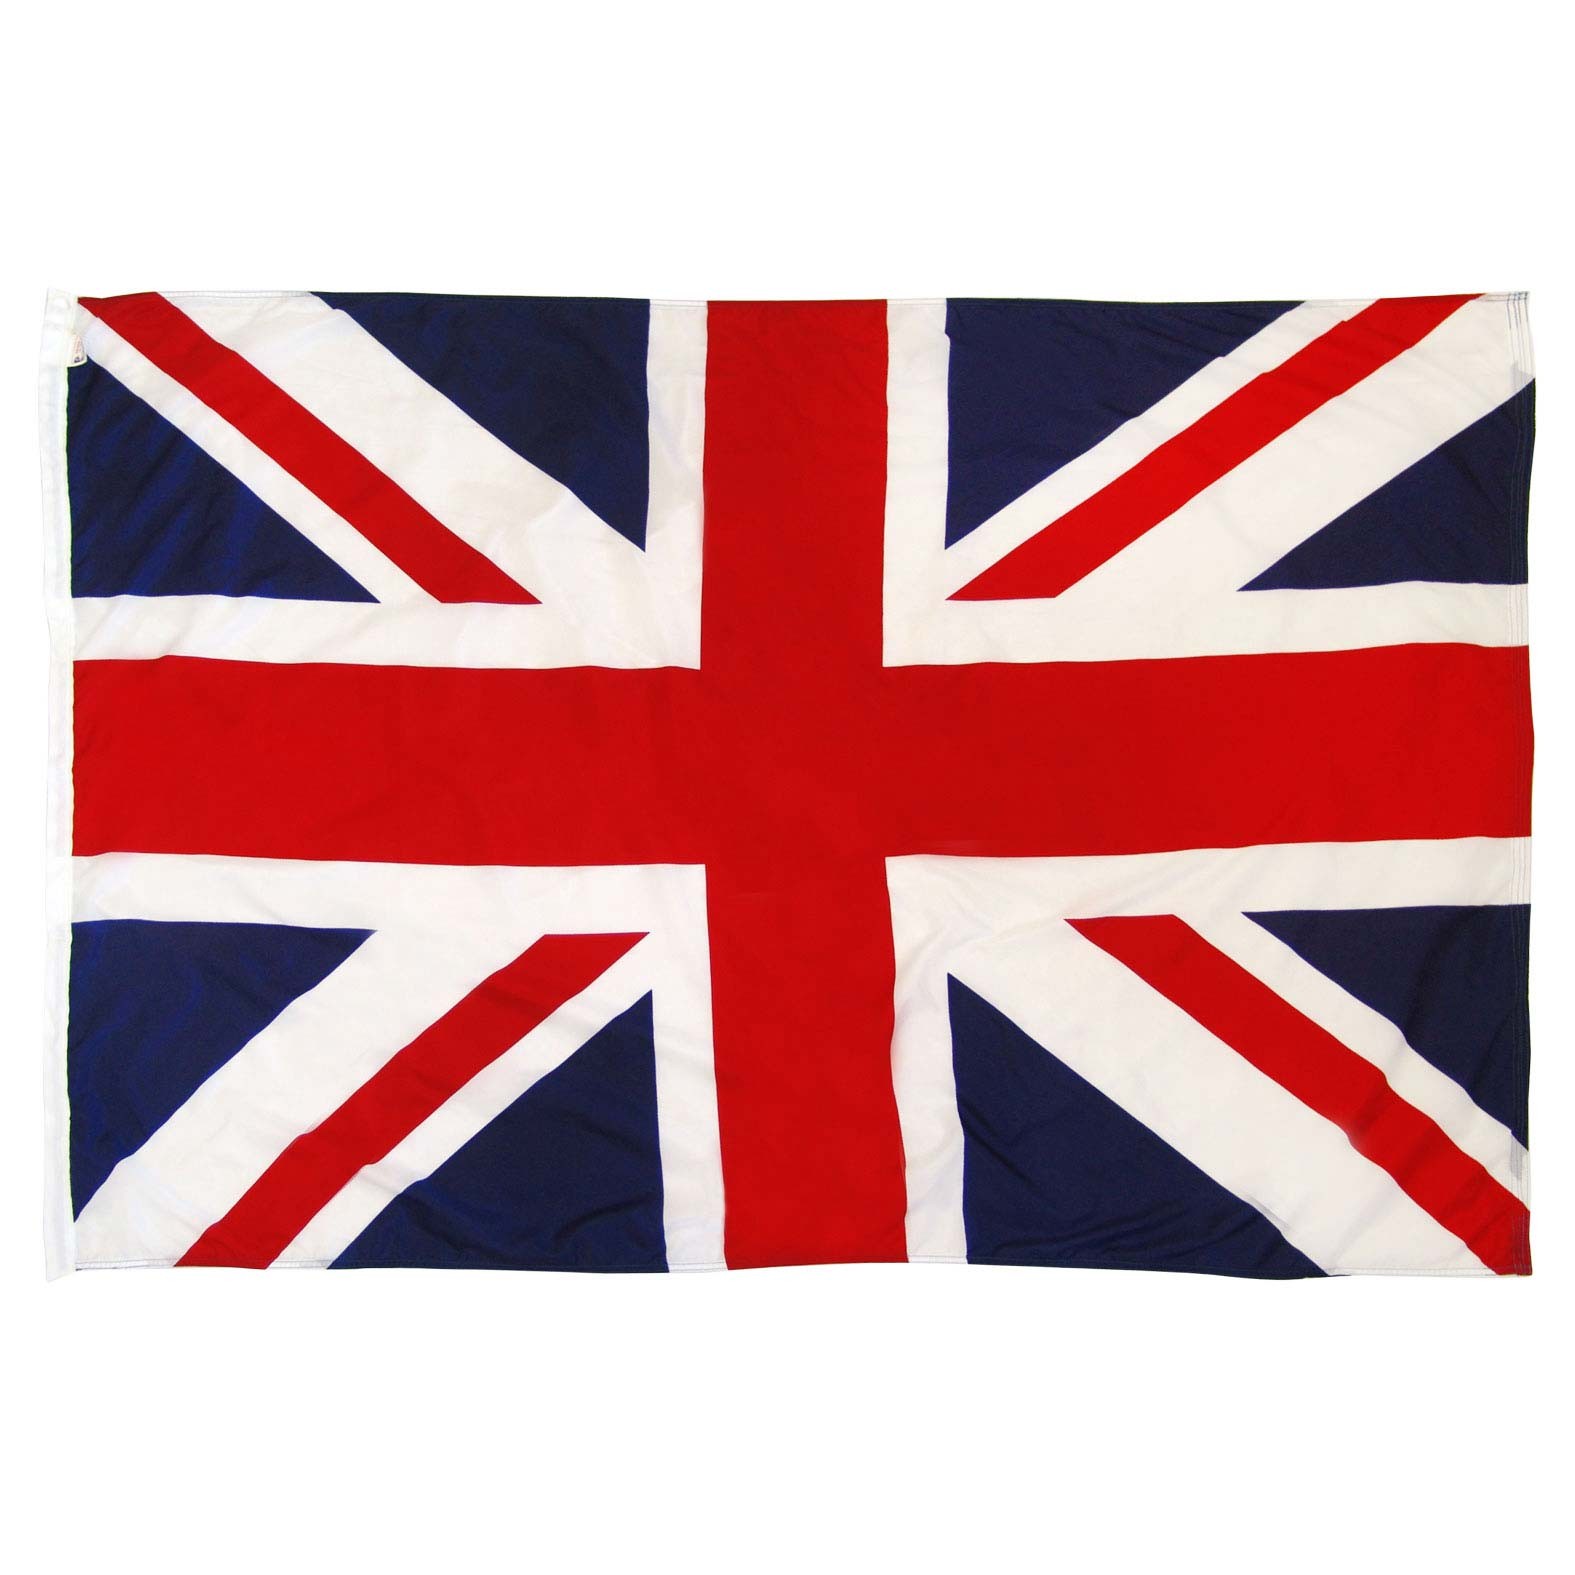 United Kingdom Flags British Flags On Sale